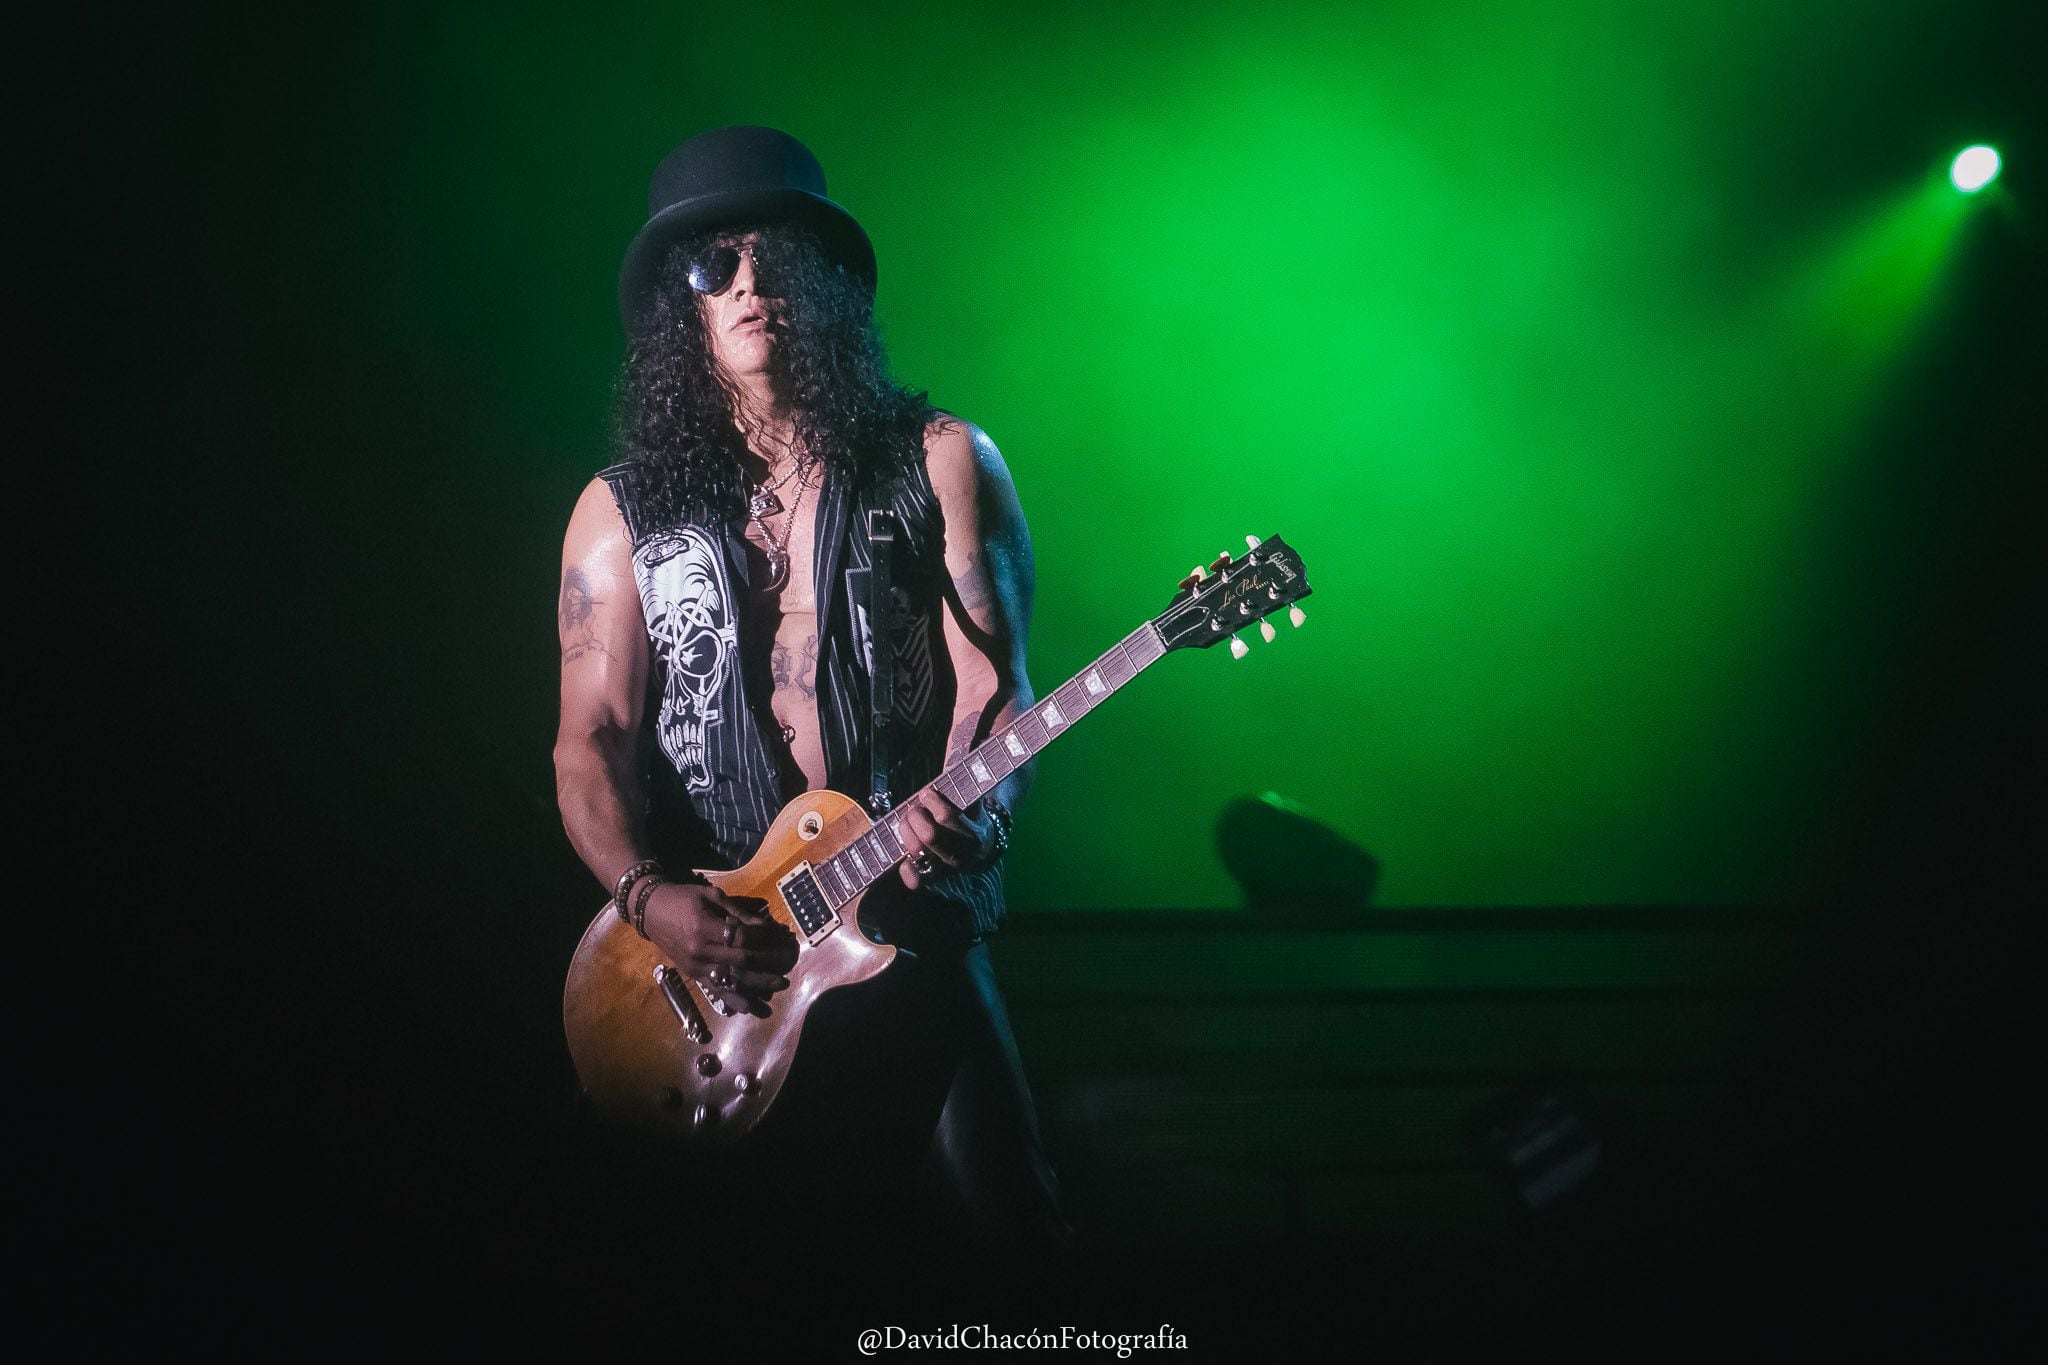 David fue el único fotógrafo autorizado para retratar a Guns N' Roses, cuando la banda se presentó en noviembre del 2016.